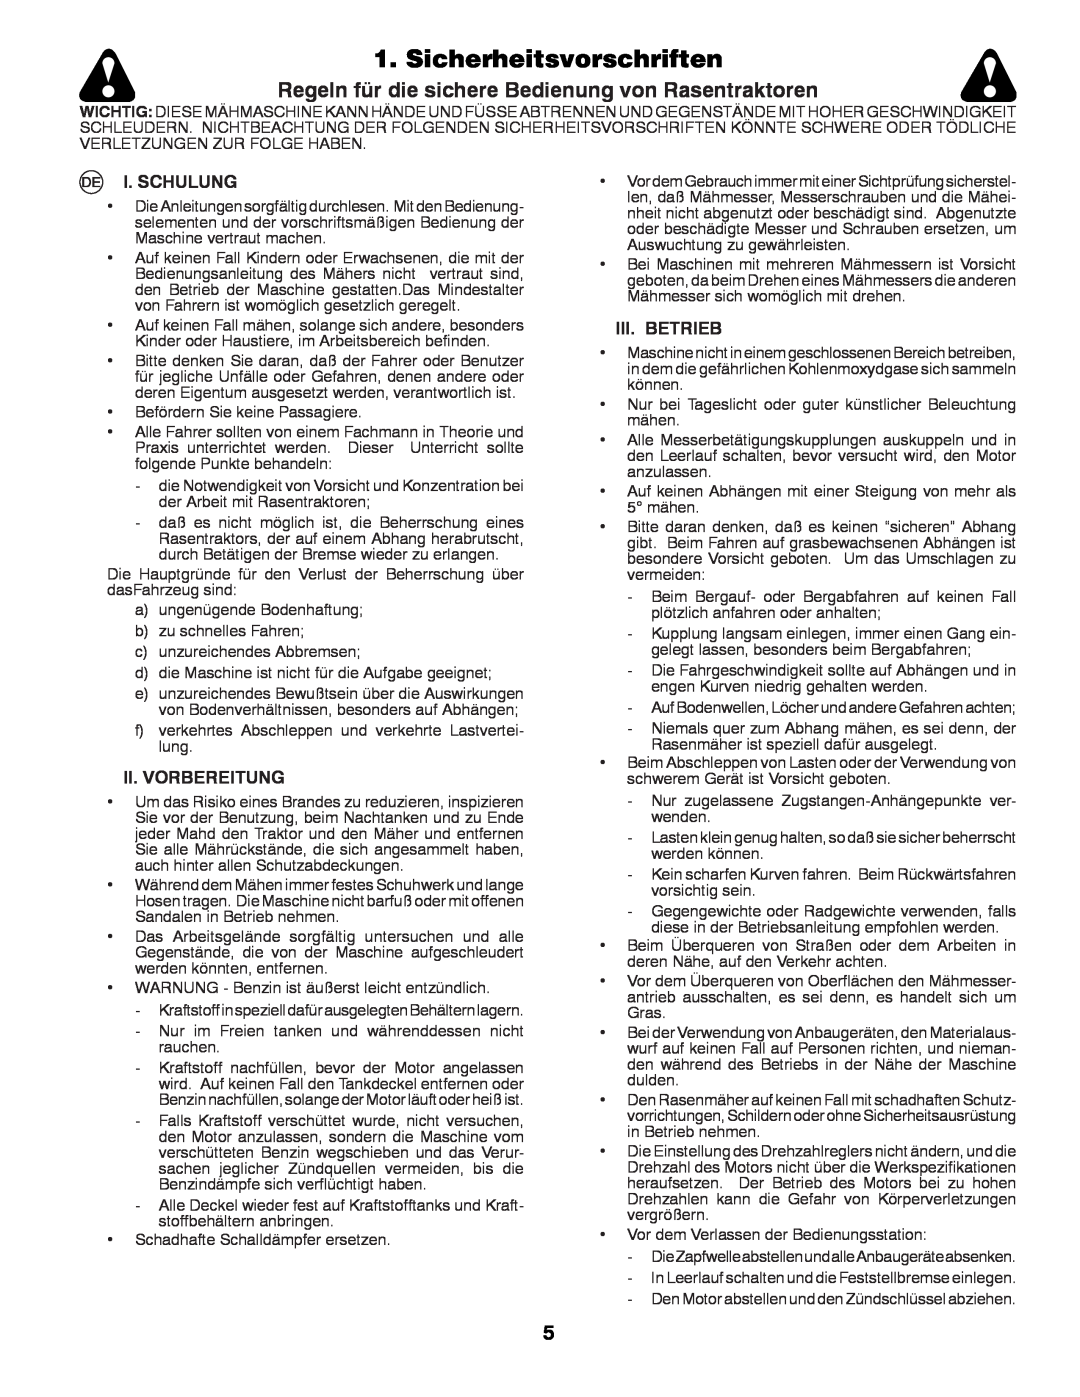 Husqvarna LTH152 Sicherheitsvorschriften, Regeln für die sichere Bedienung von Rasentraktoren, I. Schulung, Iii. Betrieb 